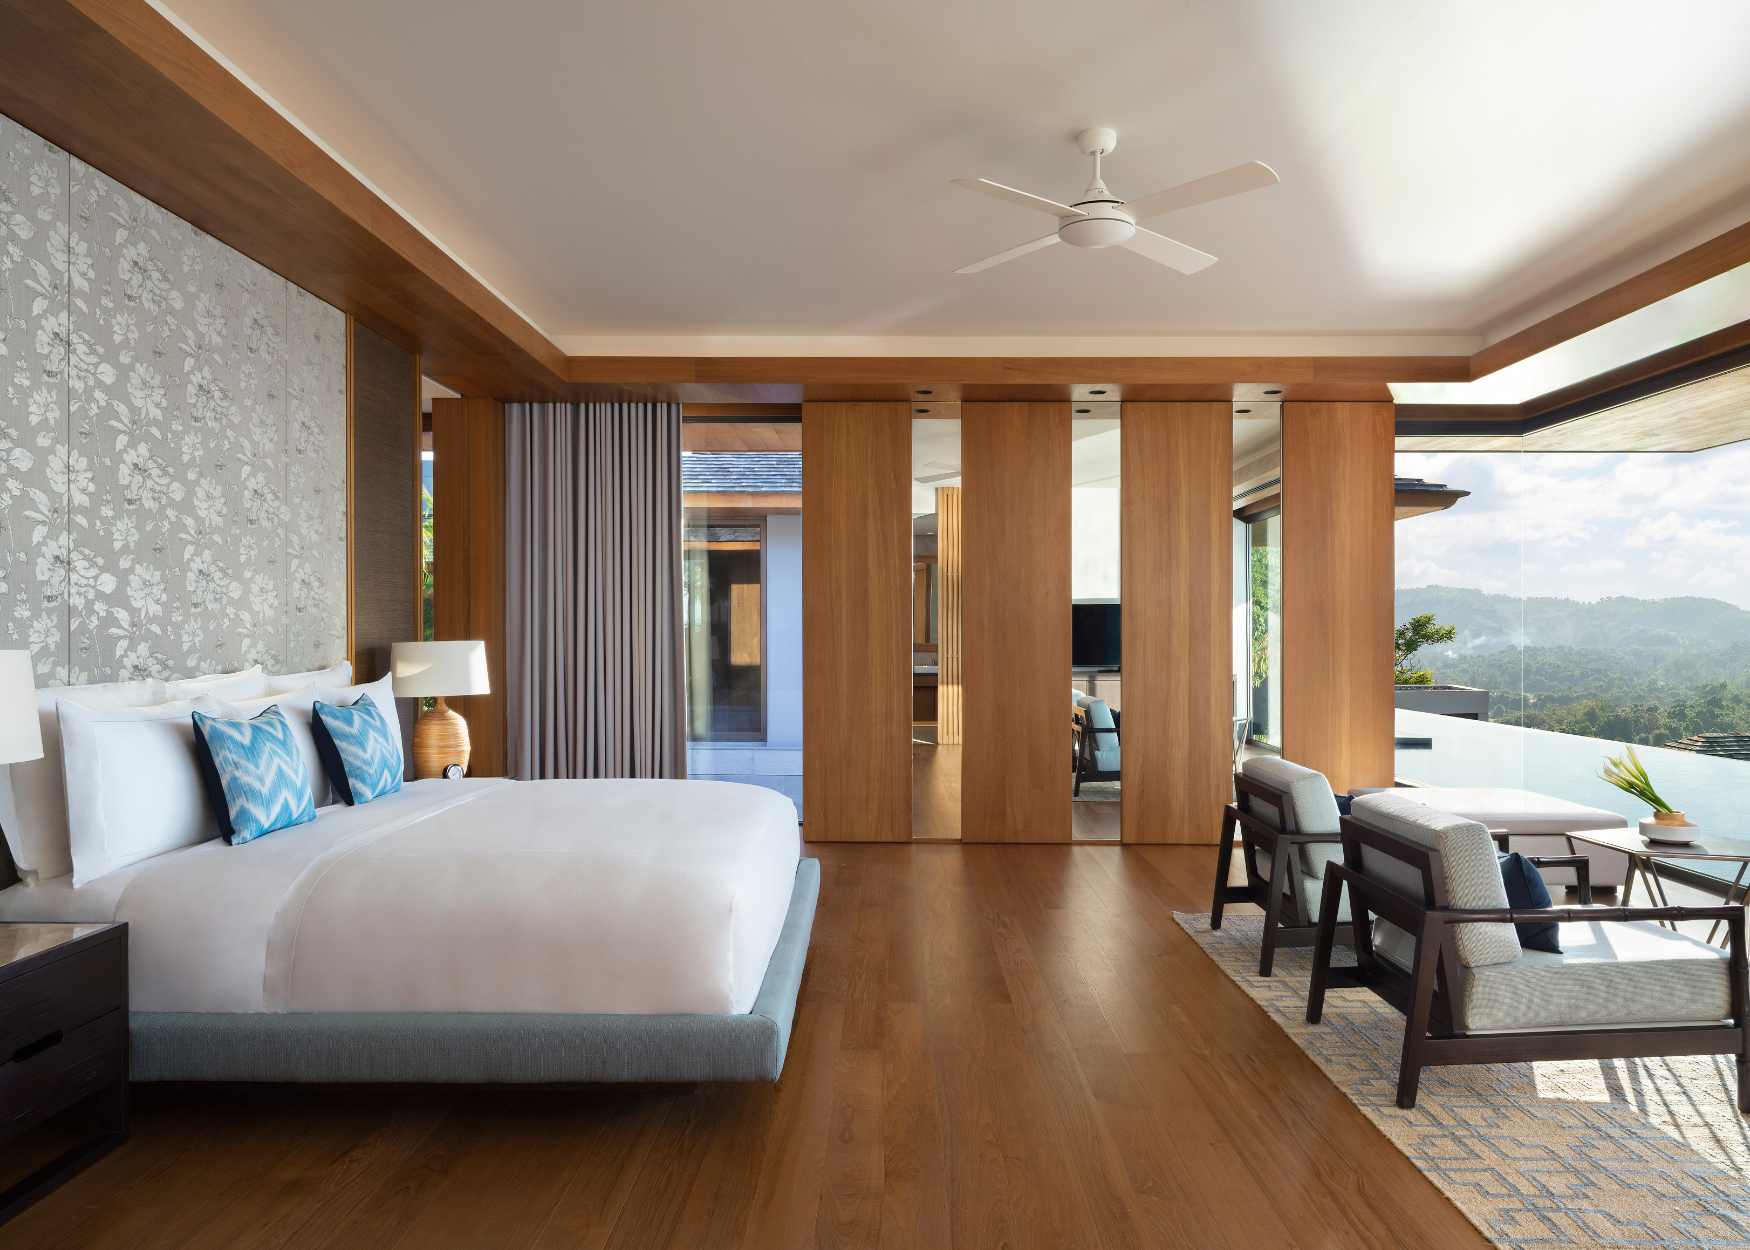 Avadina Hills master suite